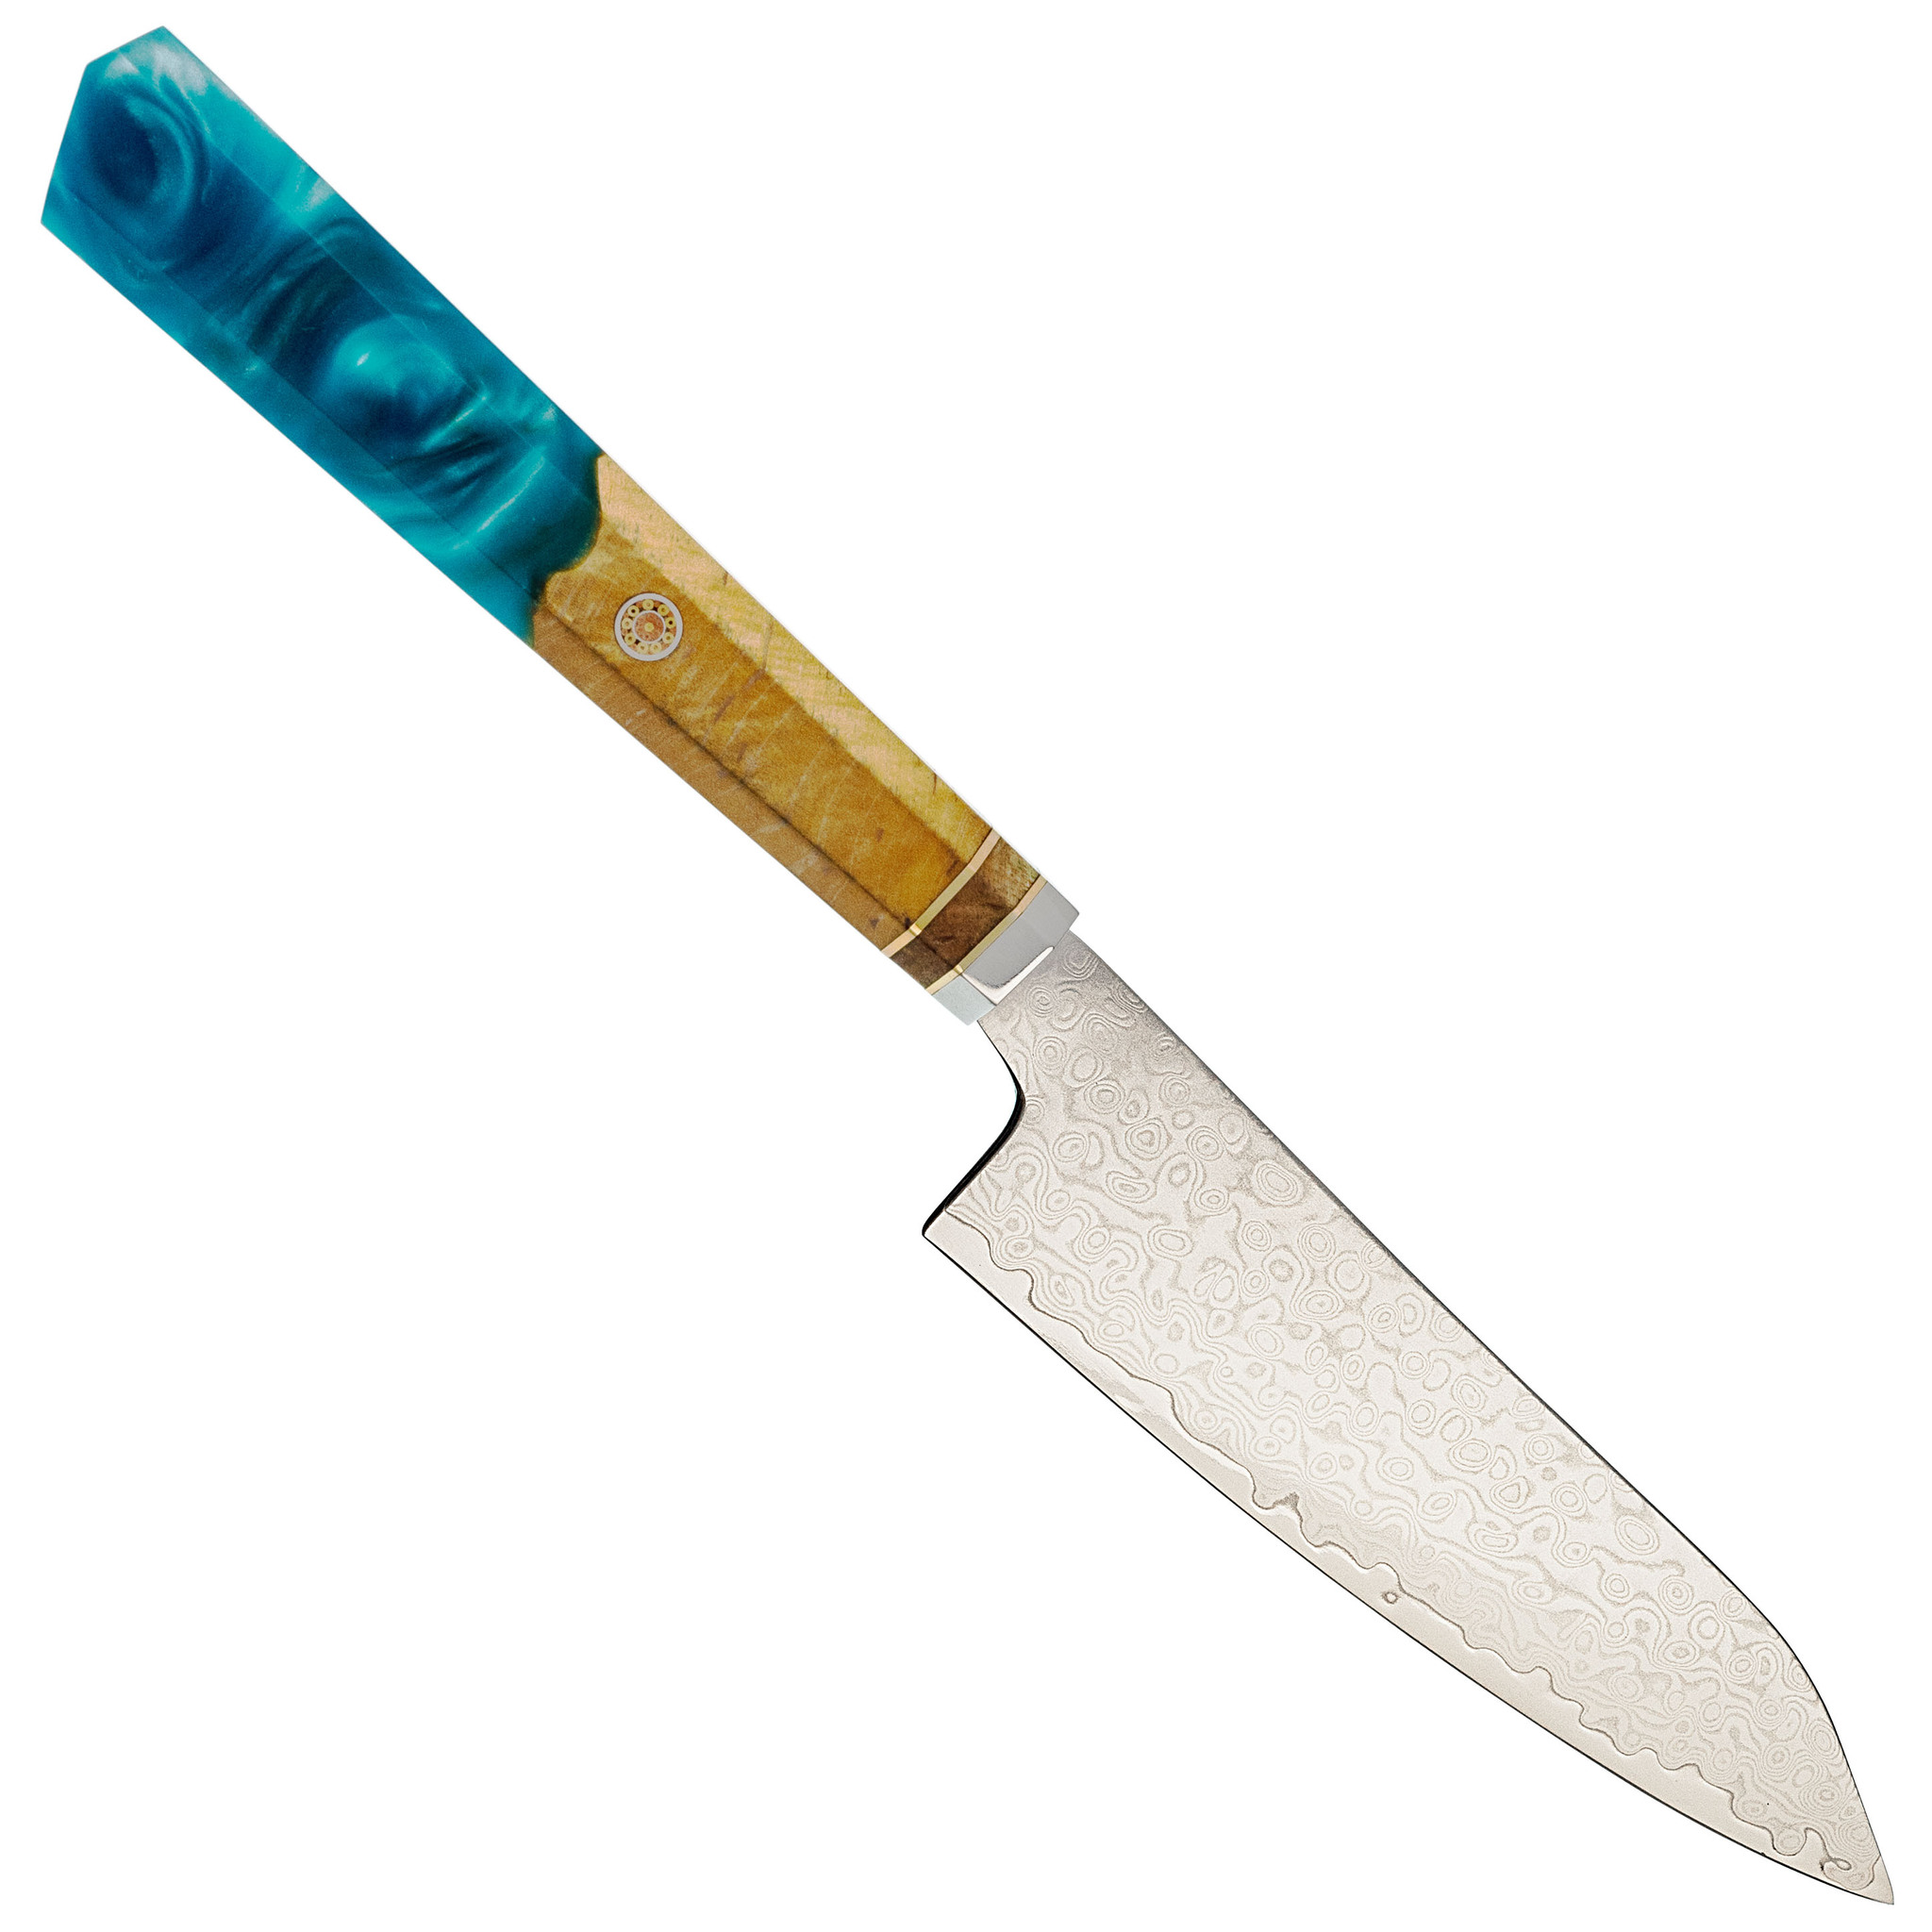 Кухонные ножи tuotown. TUOTOWN кованый нож Hai Chefs 13 см 905011 сталь aus-10, рукоять дерево венге. TUOTOWN ножи.